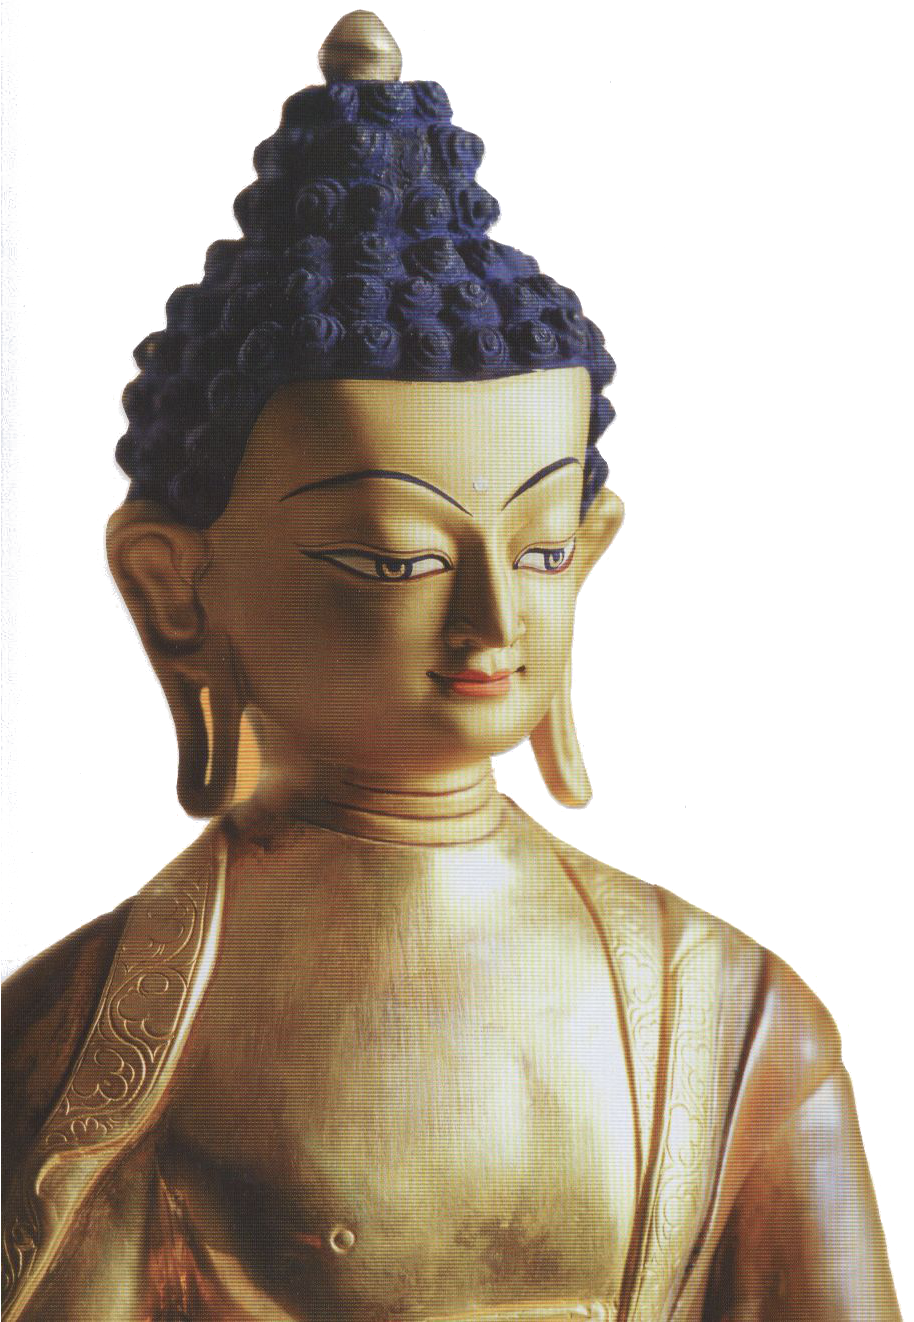 Buddha für Anfänger